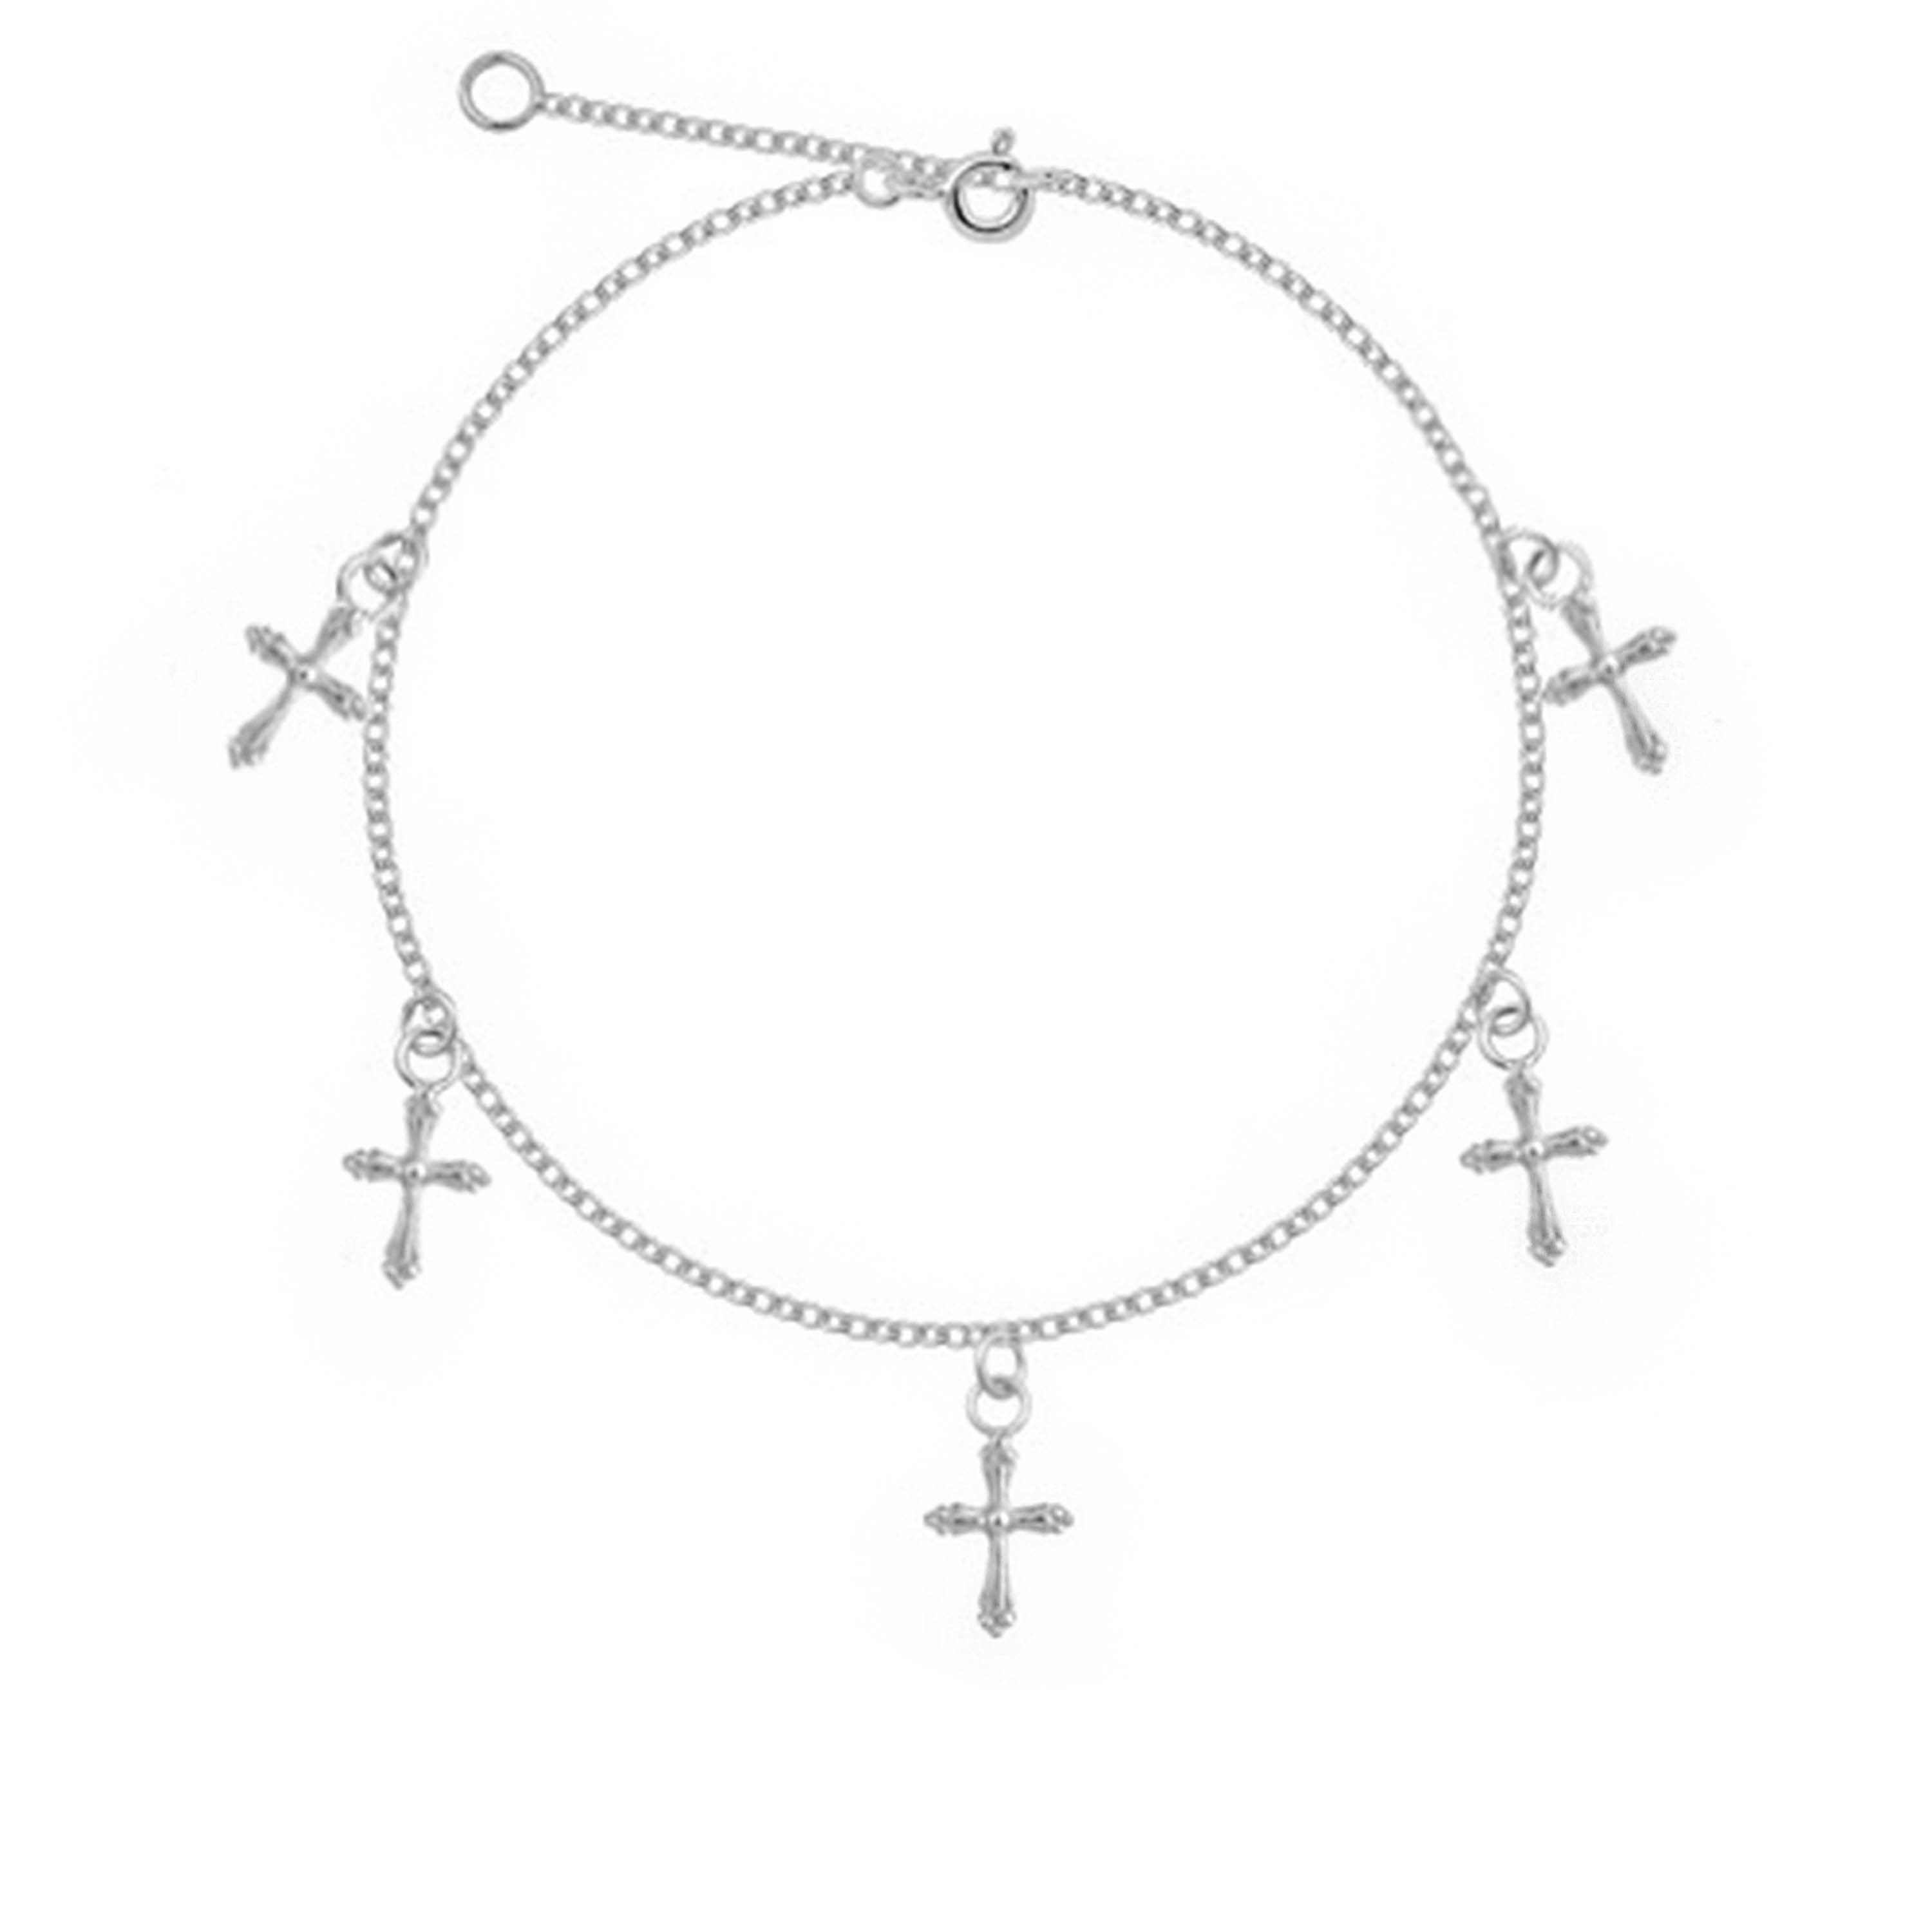 Cross Bracelet - Silver